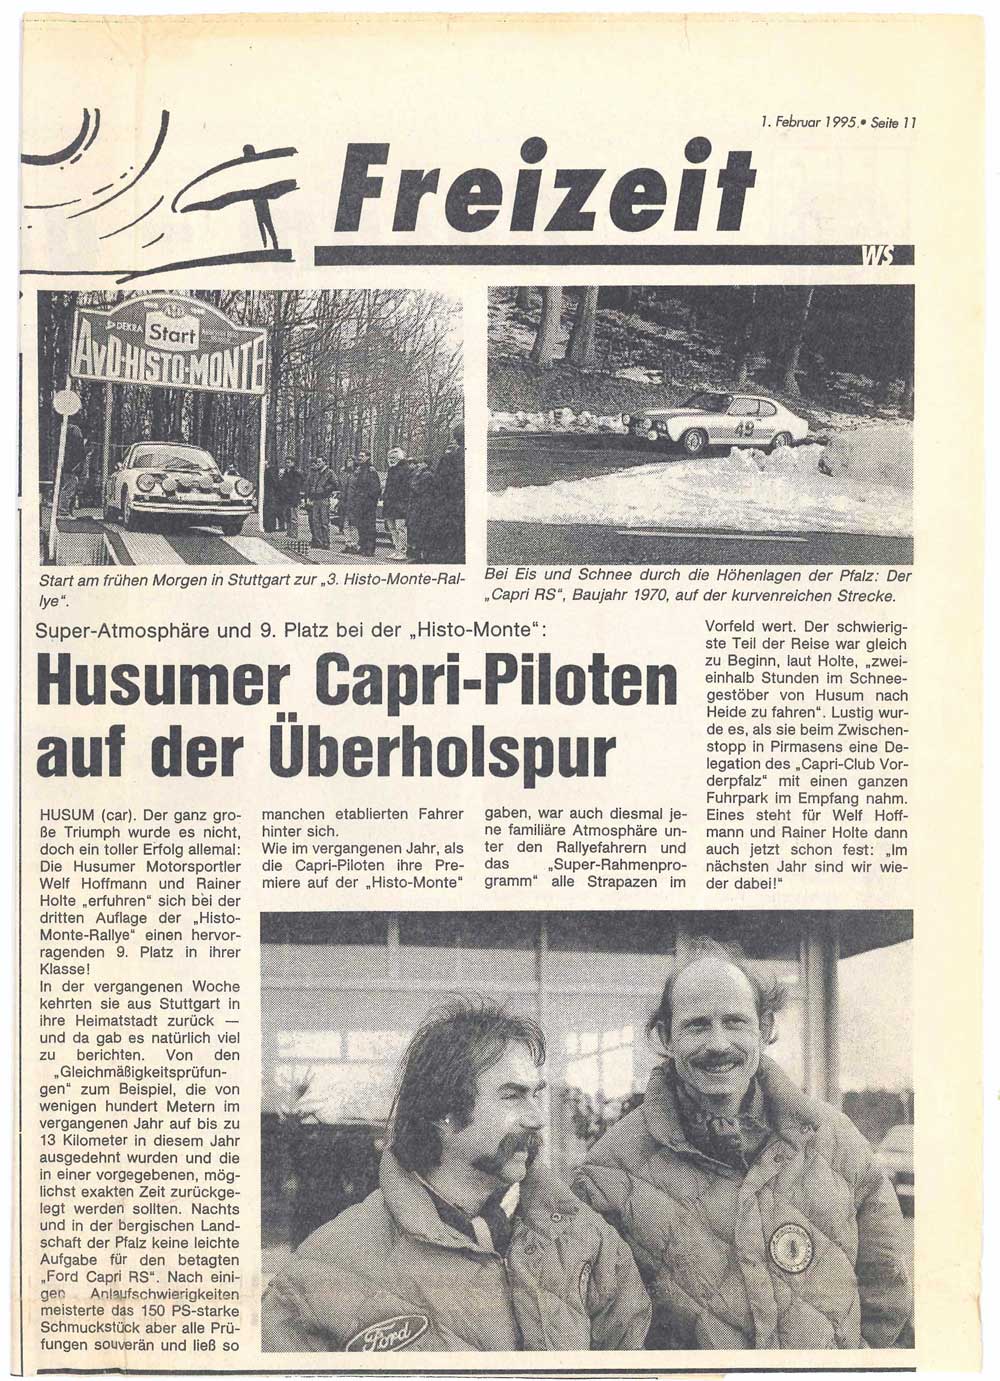 Die Wochenschau Nordfriesland berichtete 1995 über das Duo aus Husum.